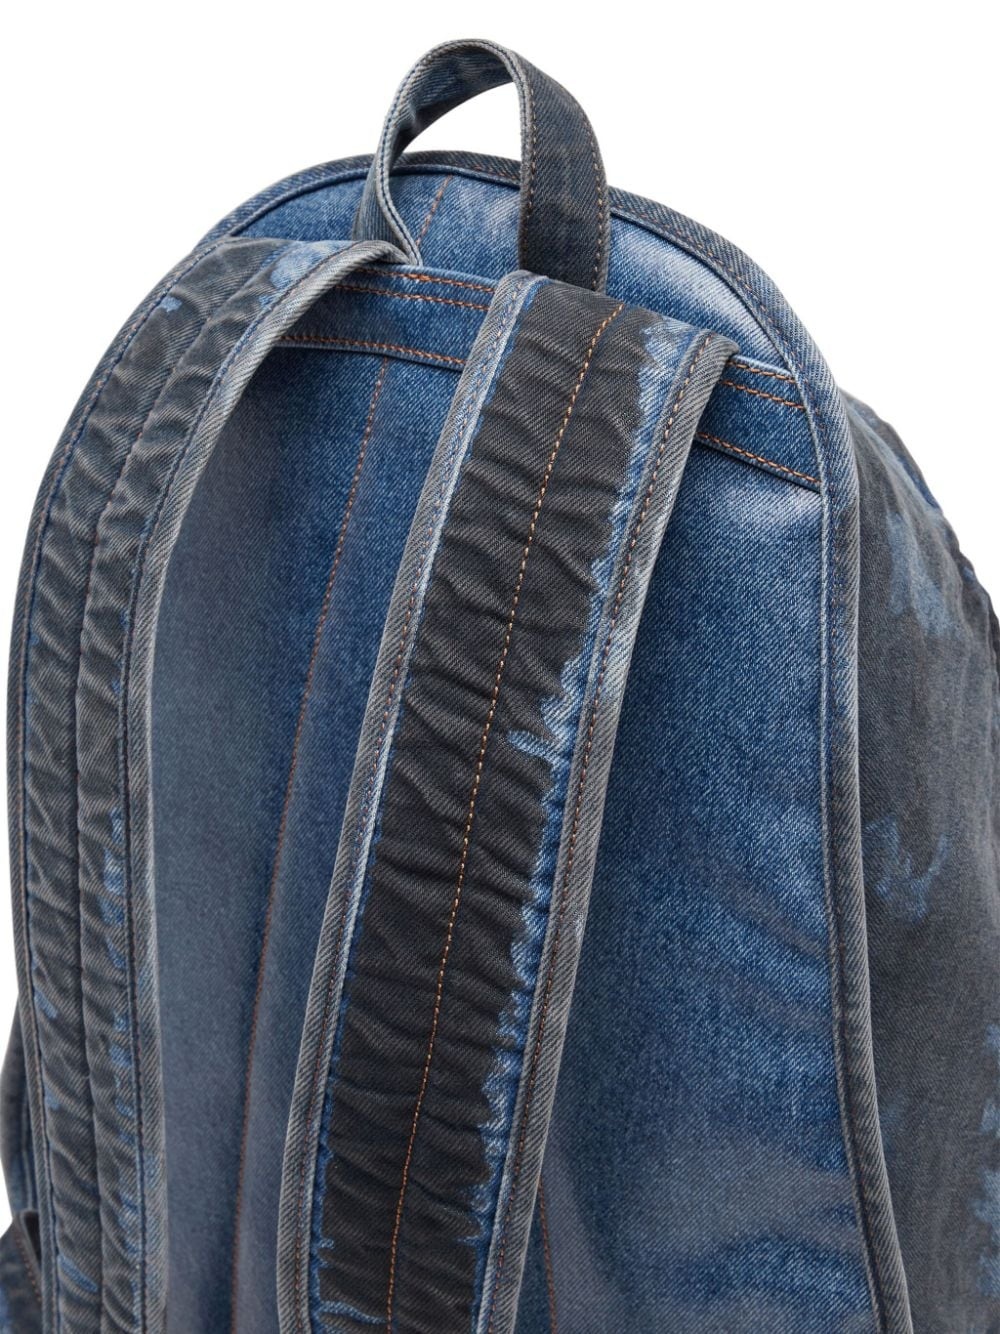 Rave coated denim backpack - 5